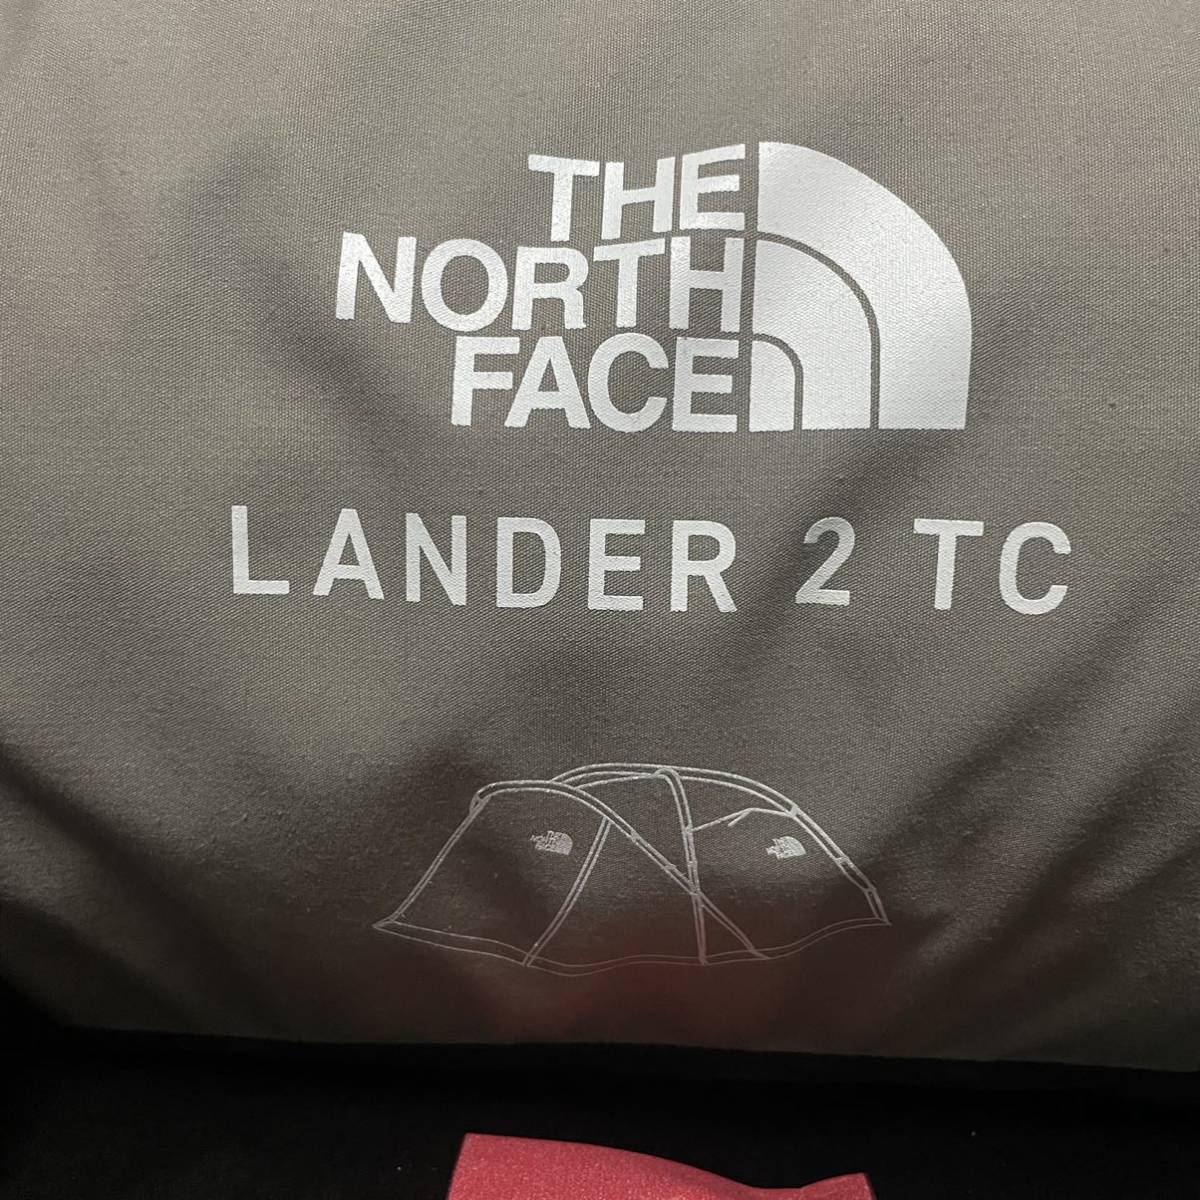 ノースフェイス 恵比寿限定 ランダー2 TC 【NV22251R】Lander 2 TC 